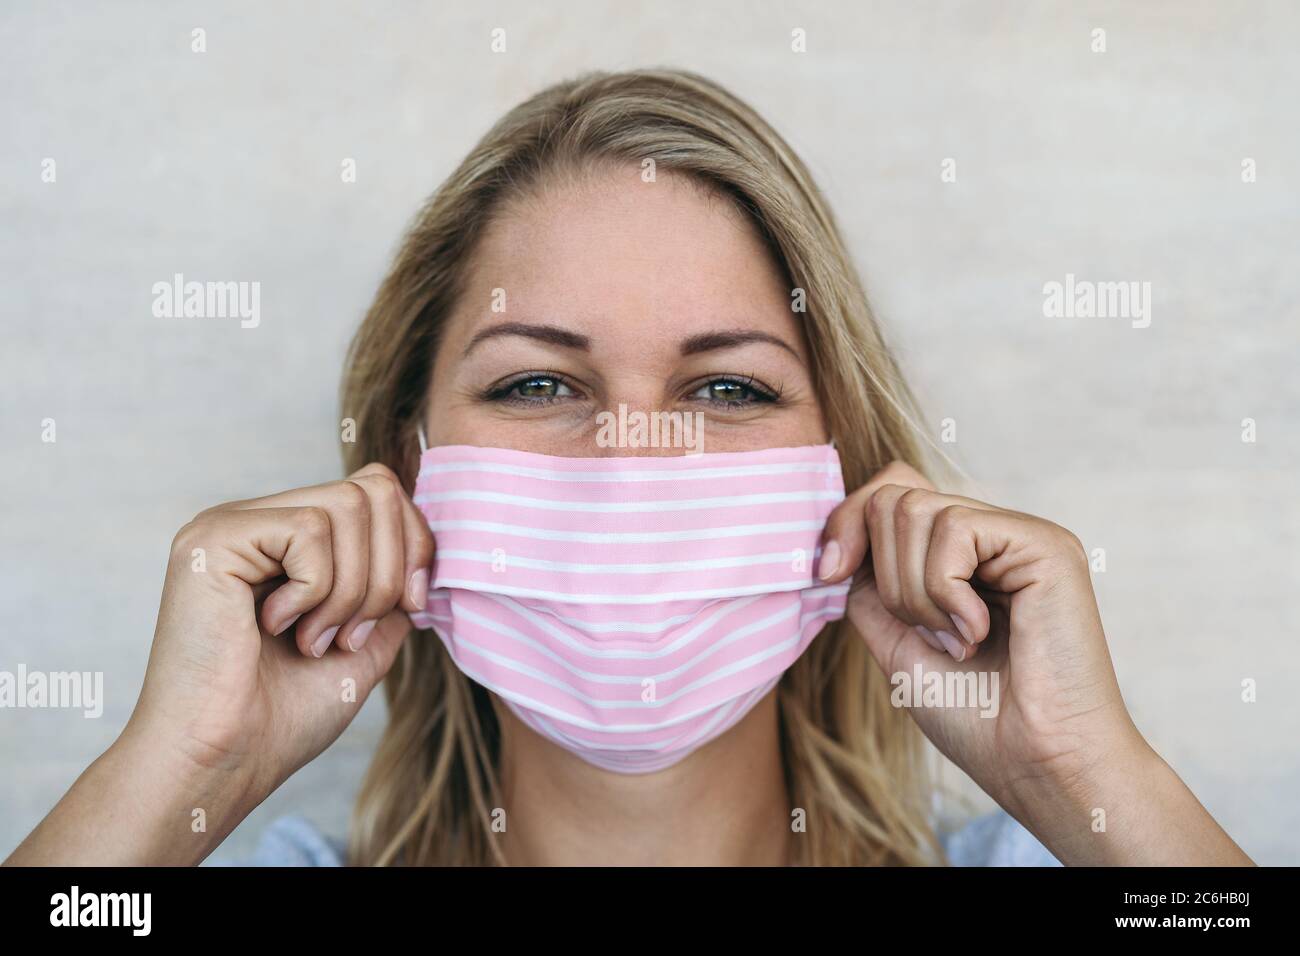 Jeune femme portant un masque rose portrait - Blonde femelle utilisant un masque facial protecteur pour prévenir la propagation du virus corona Banque D'Images